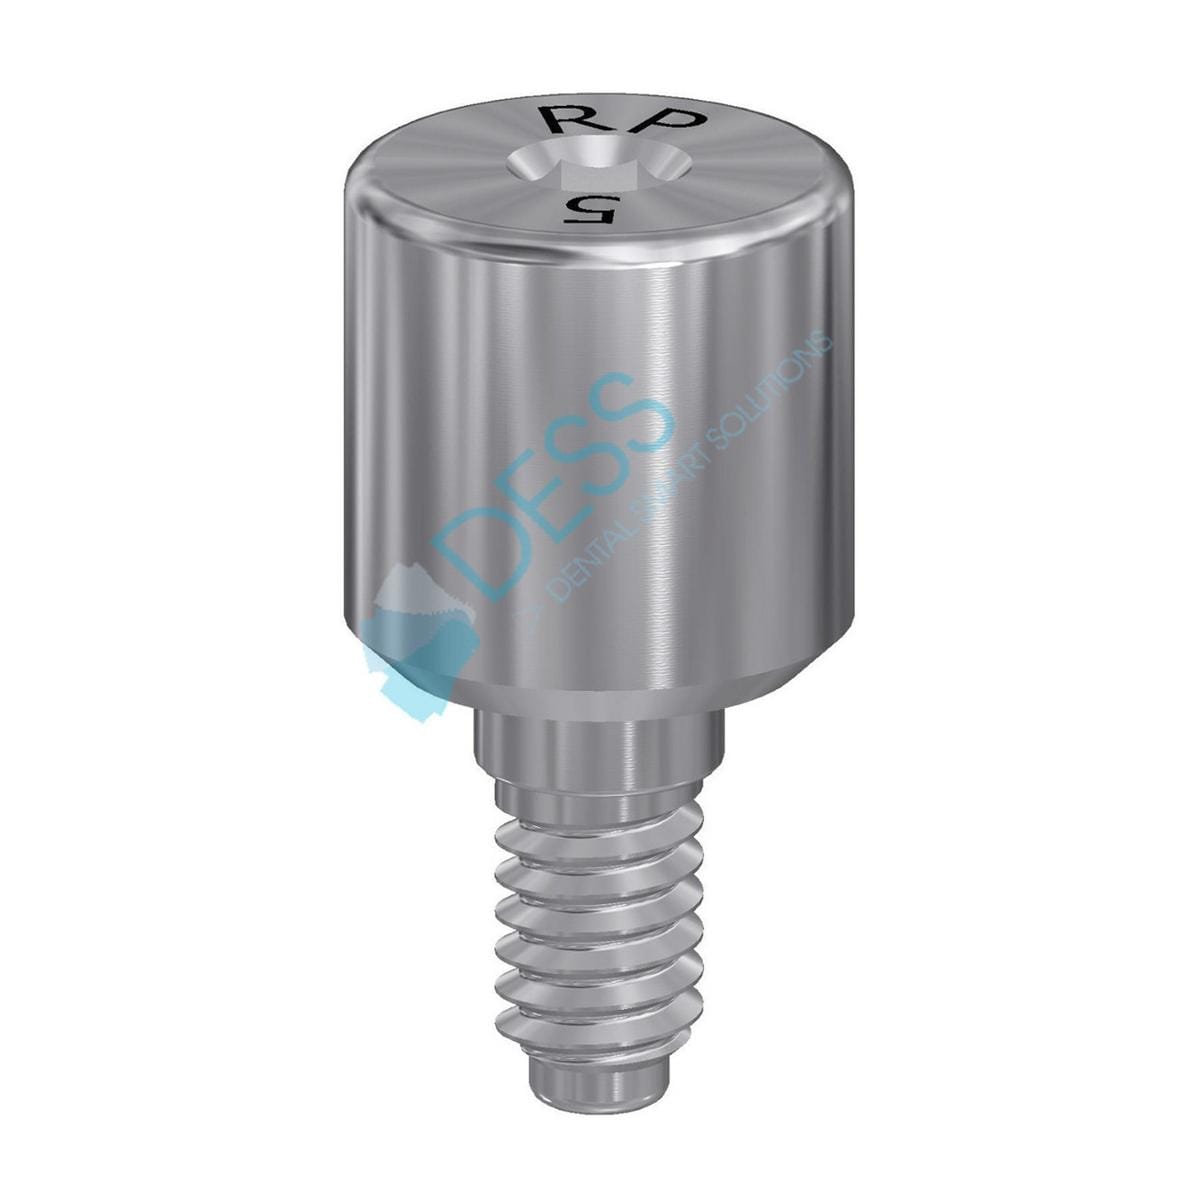 Gingivaformer - kompatibel mit Zimmer Screw-Vent® - RP Ø 4,5 mm, Höhe 5,0 mm